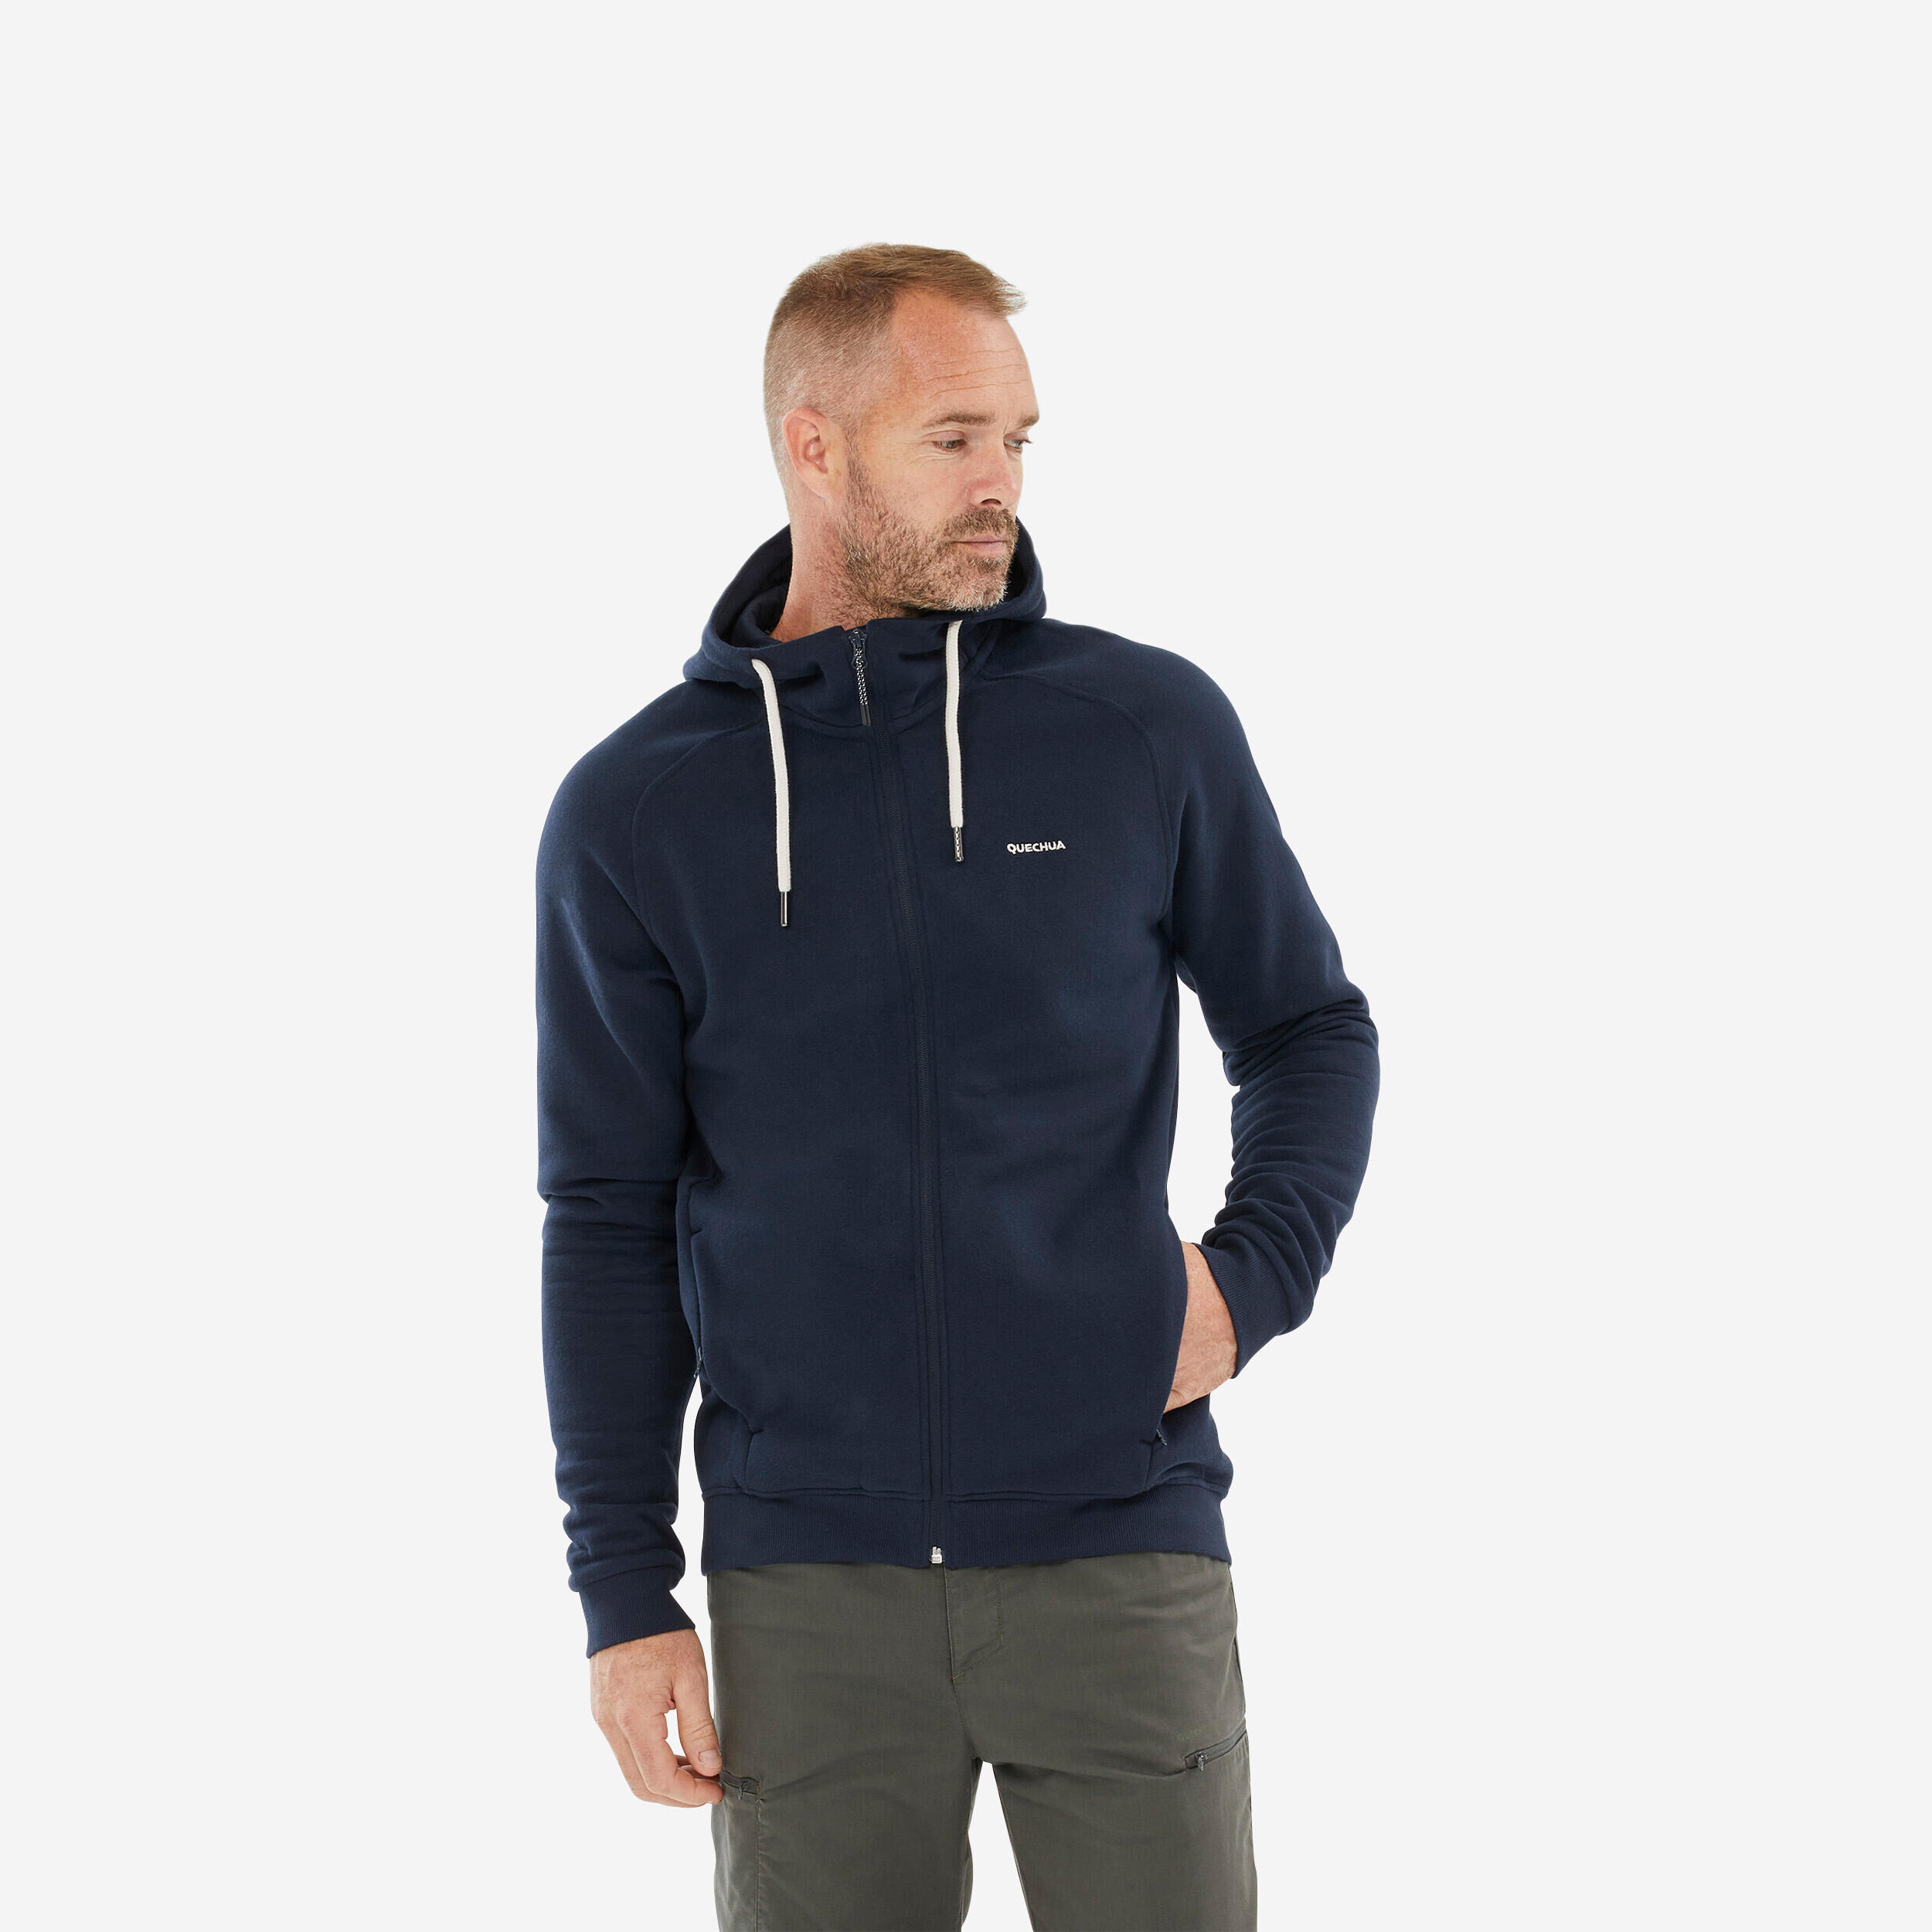 QUECHUA Men’s Hiking Zipped Hooded Sweatshirt - NH150